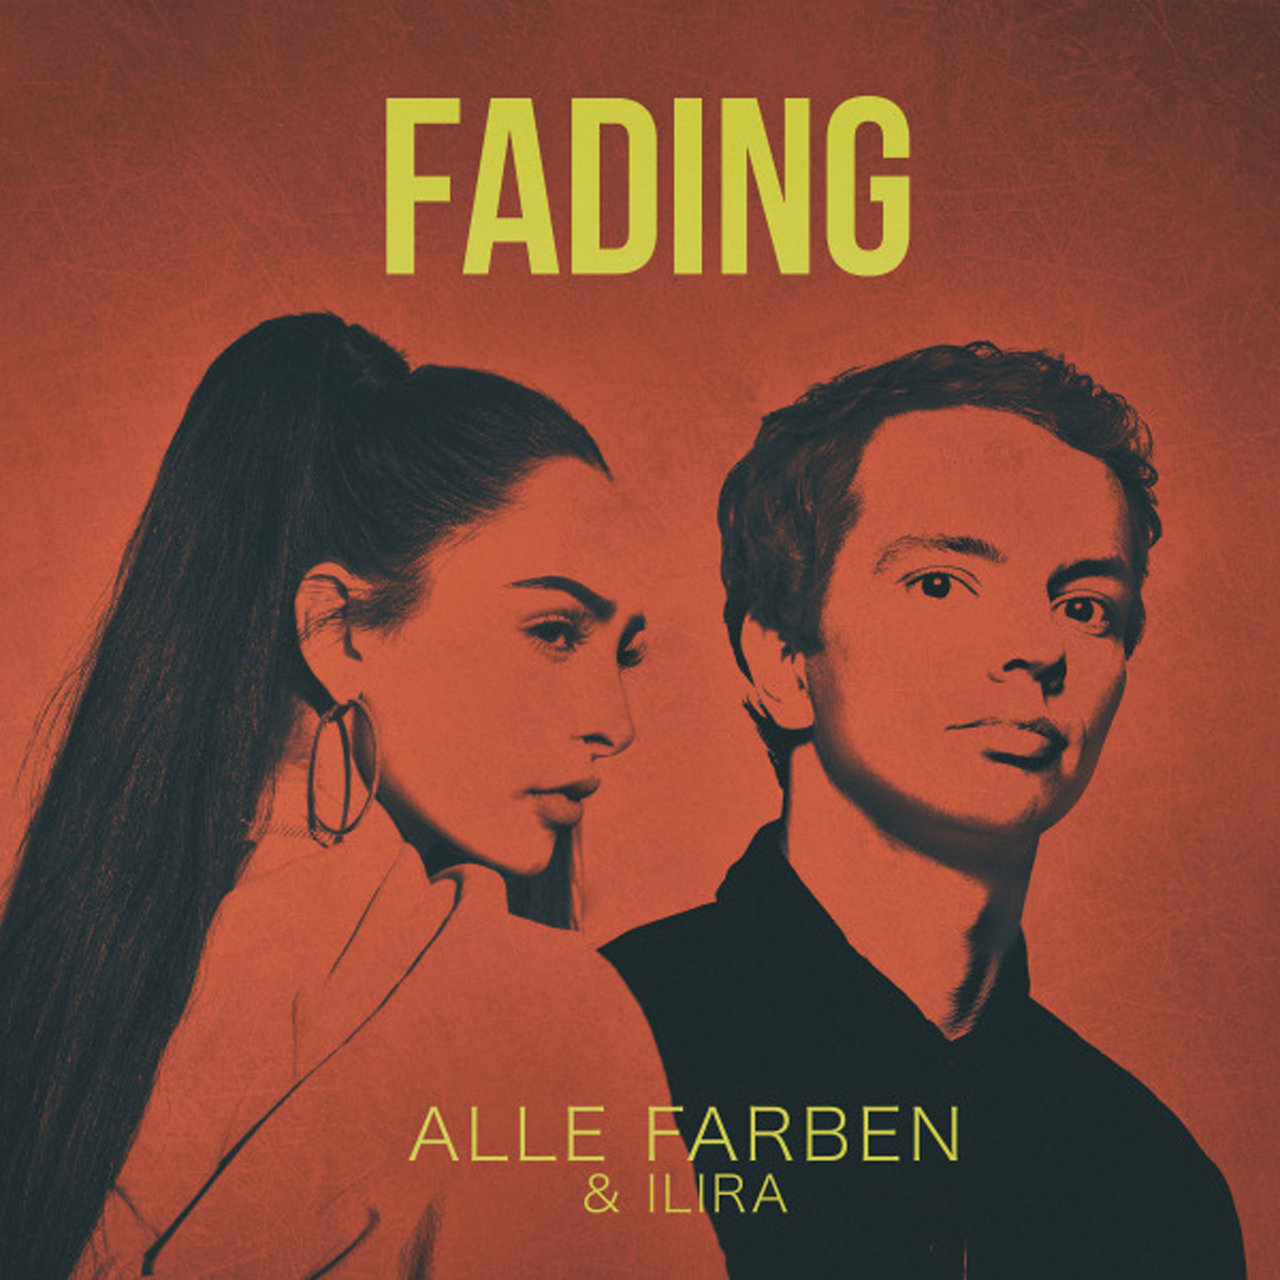 Alle Farben & ILIRA Fading cover artwork